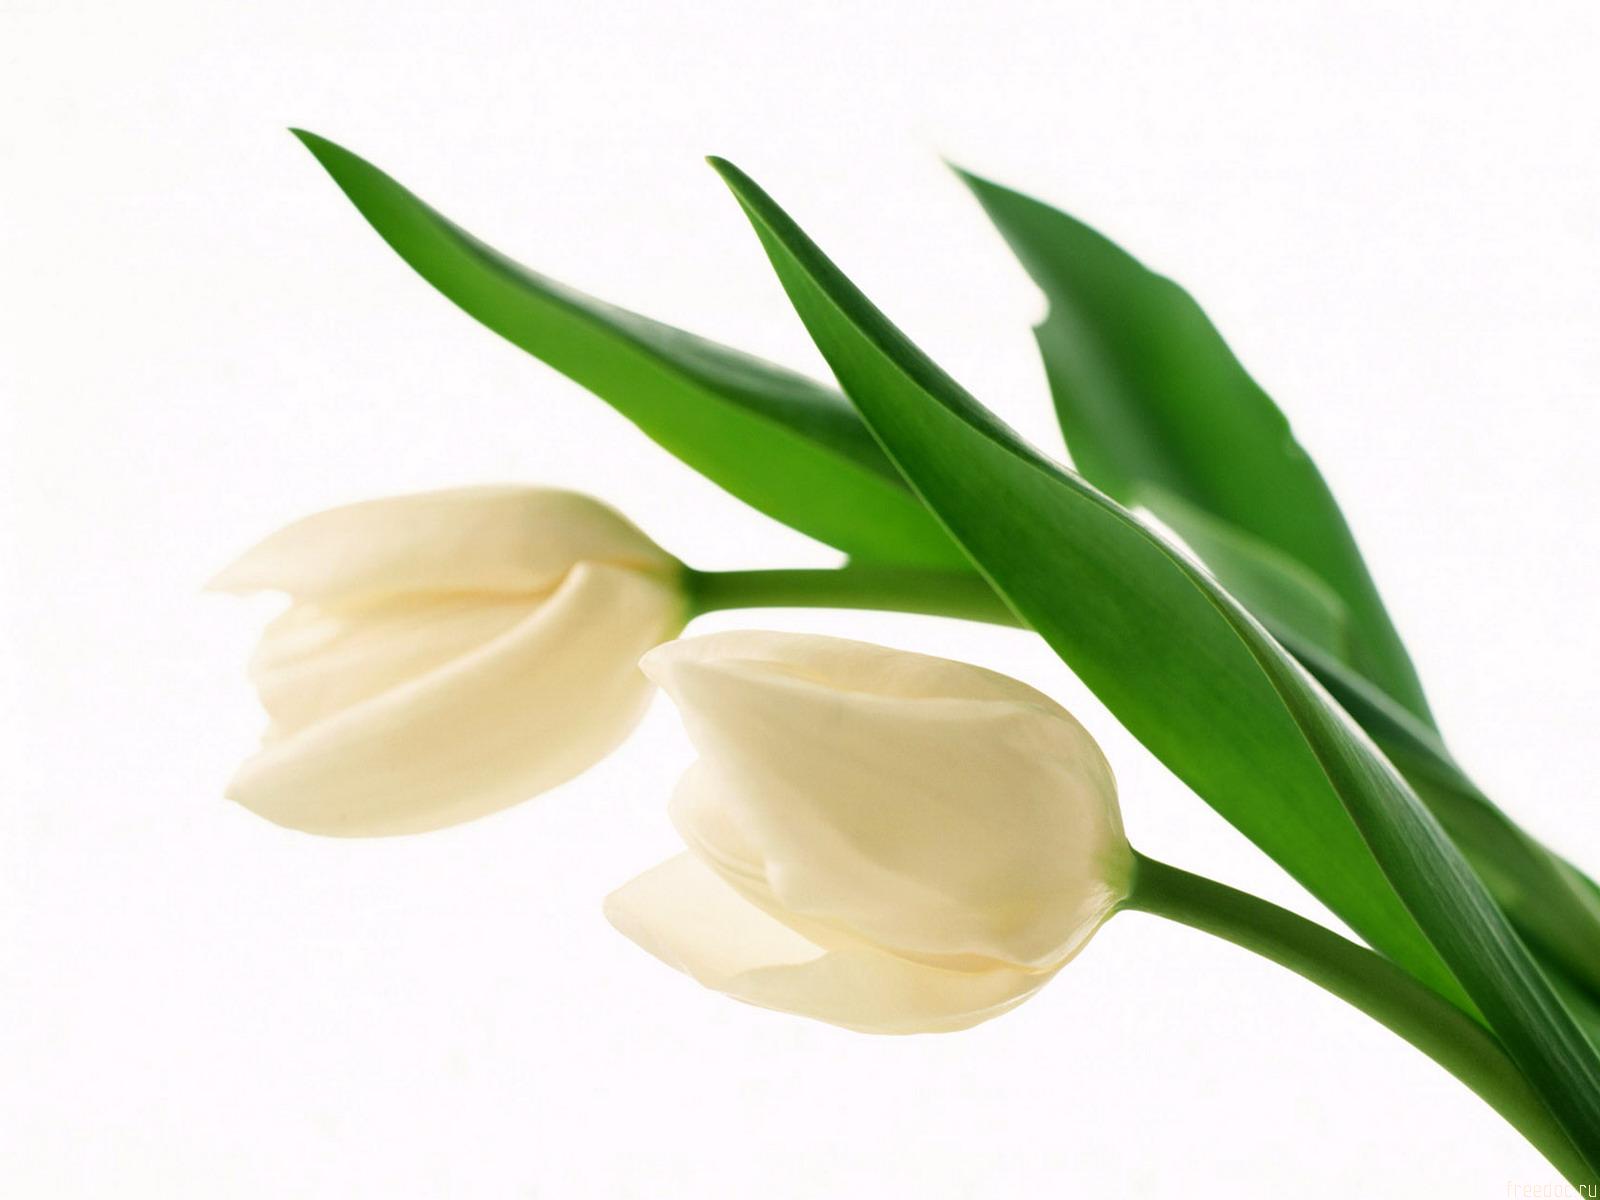 Download mobile wallpaper Flowers, Flower, Earth, Tulip, White Flower for free.